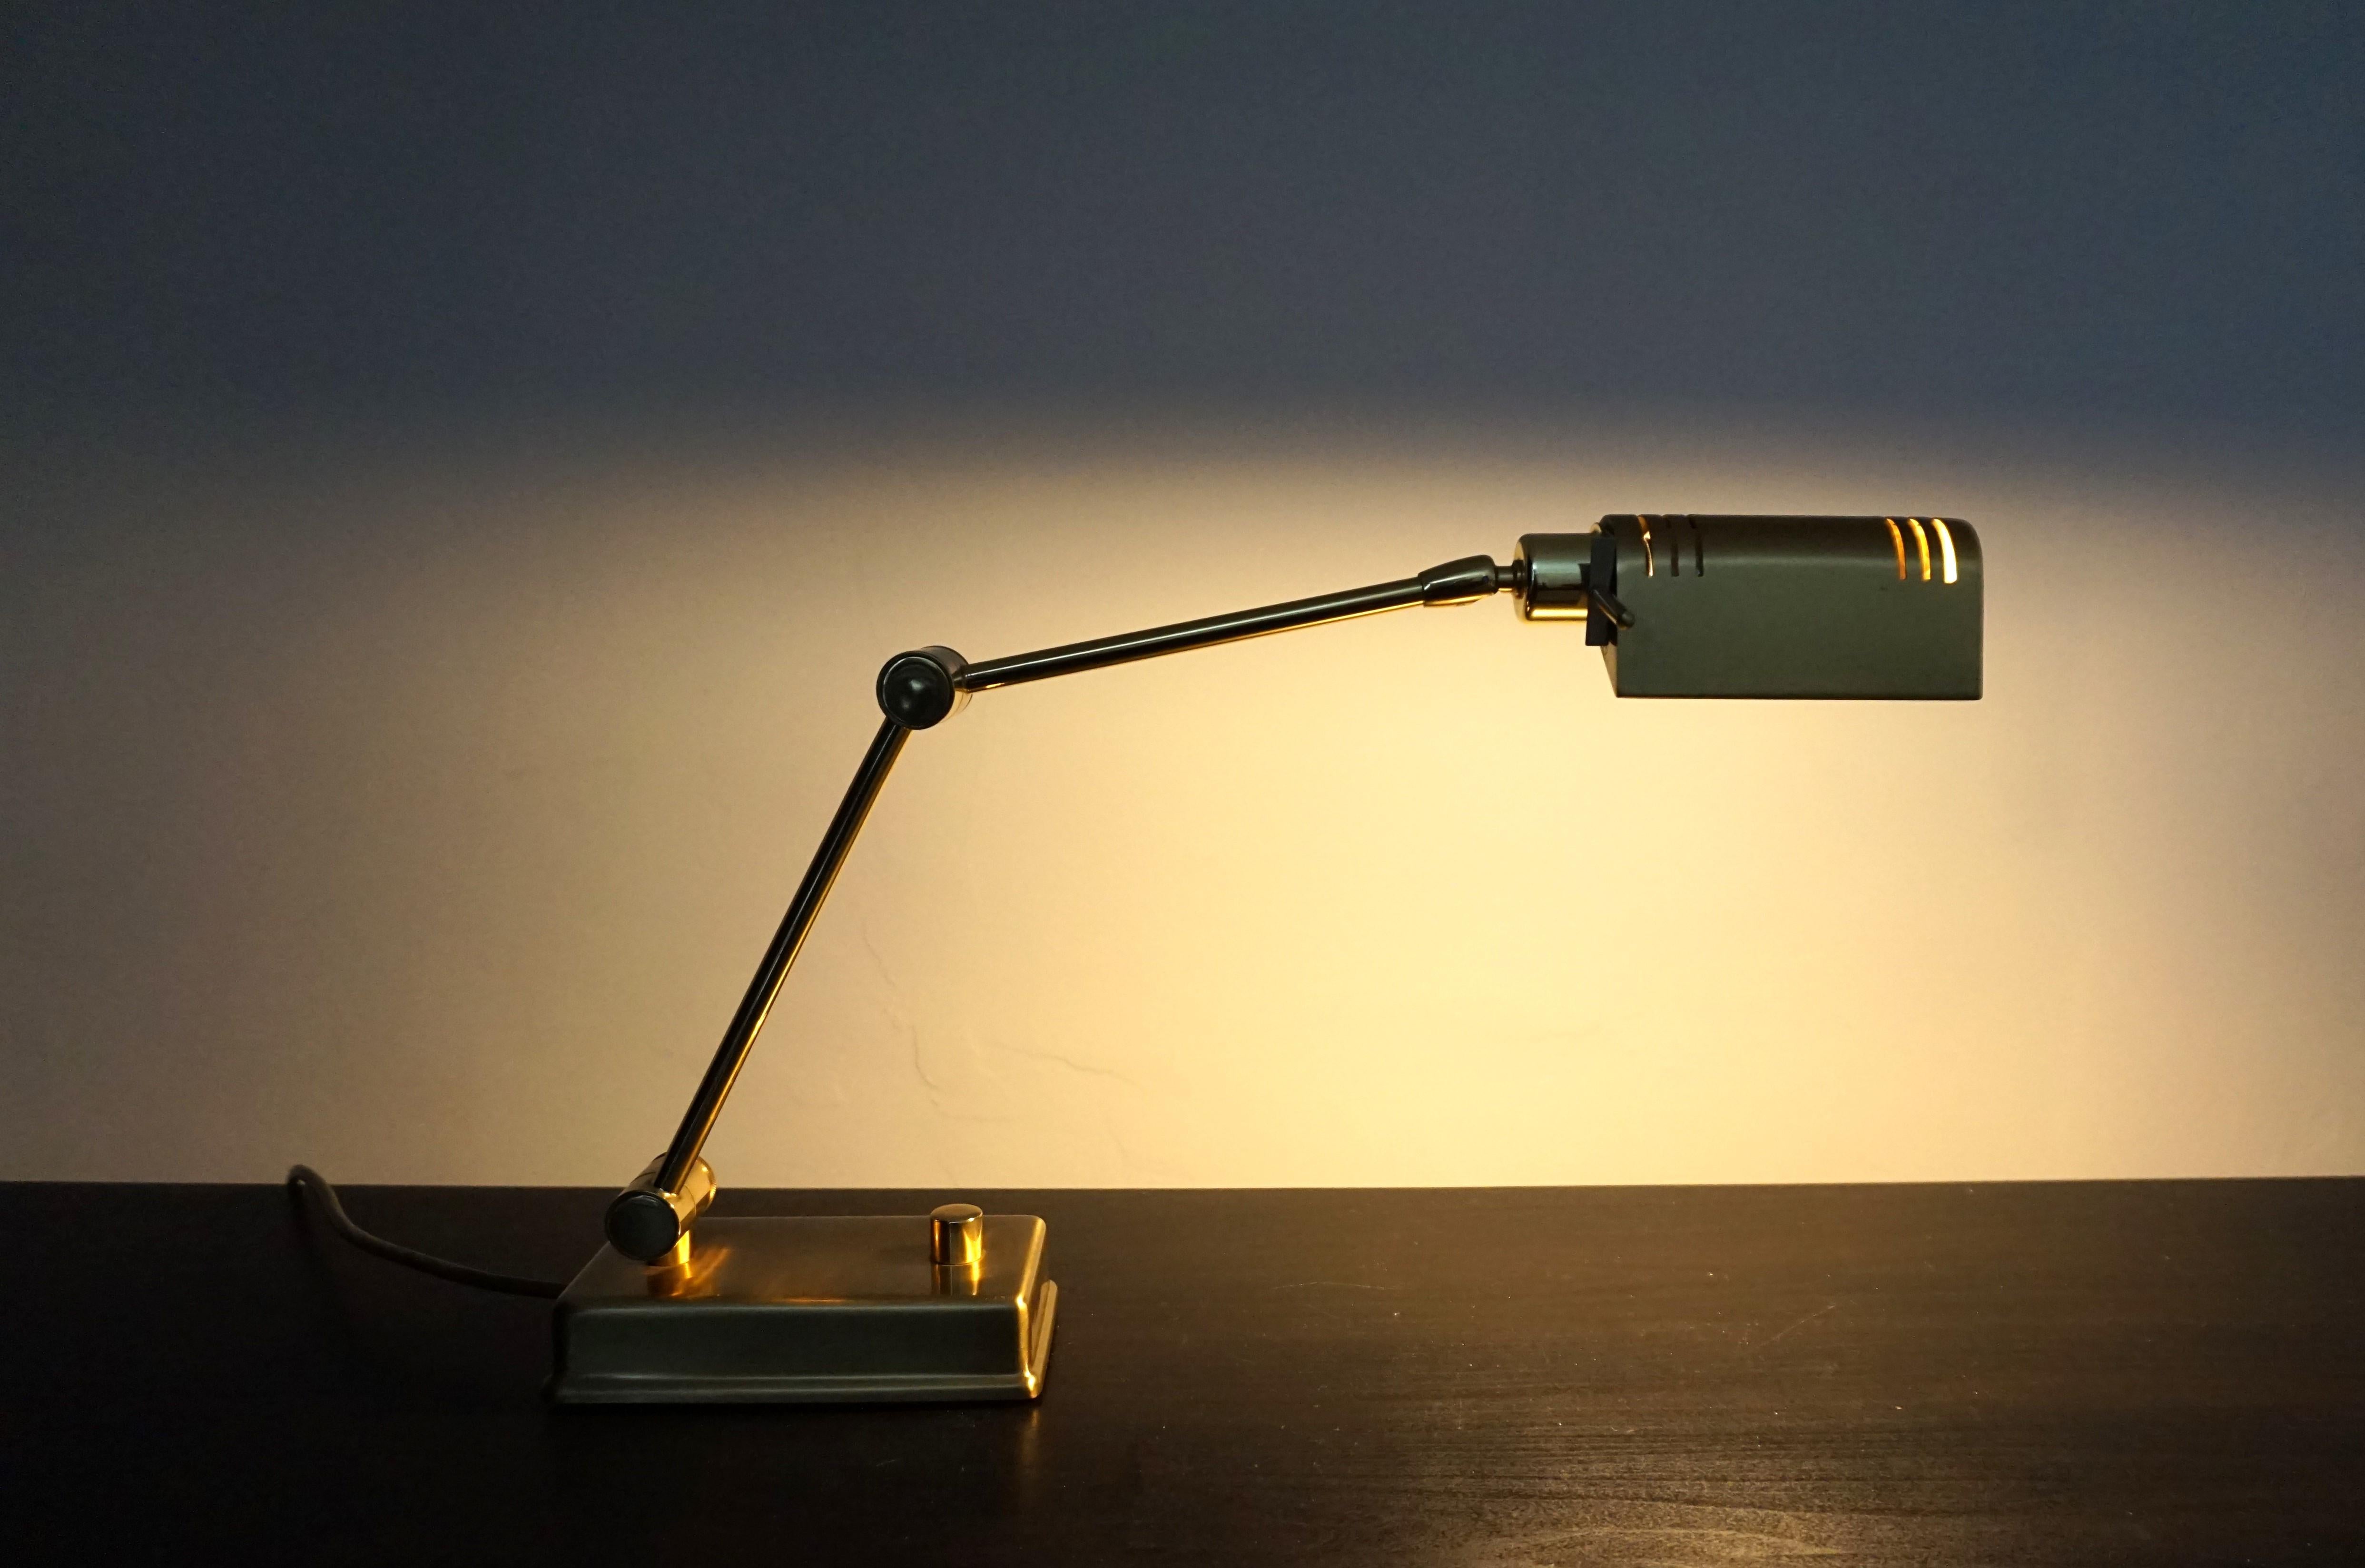 Die massive Tischlampe aus Messing in einem schönen Goldton ist in erstklassigem Zustand. Die Leuchte kann durch einen beweglichen Arm und den beweglichen Leuchtenkopf vielfältig eingestellt werden und ermöglicht so einen sehr variablen Einsatz. Die